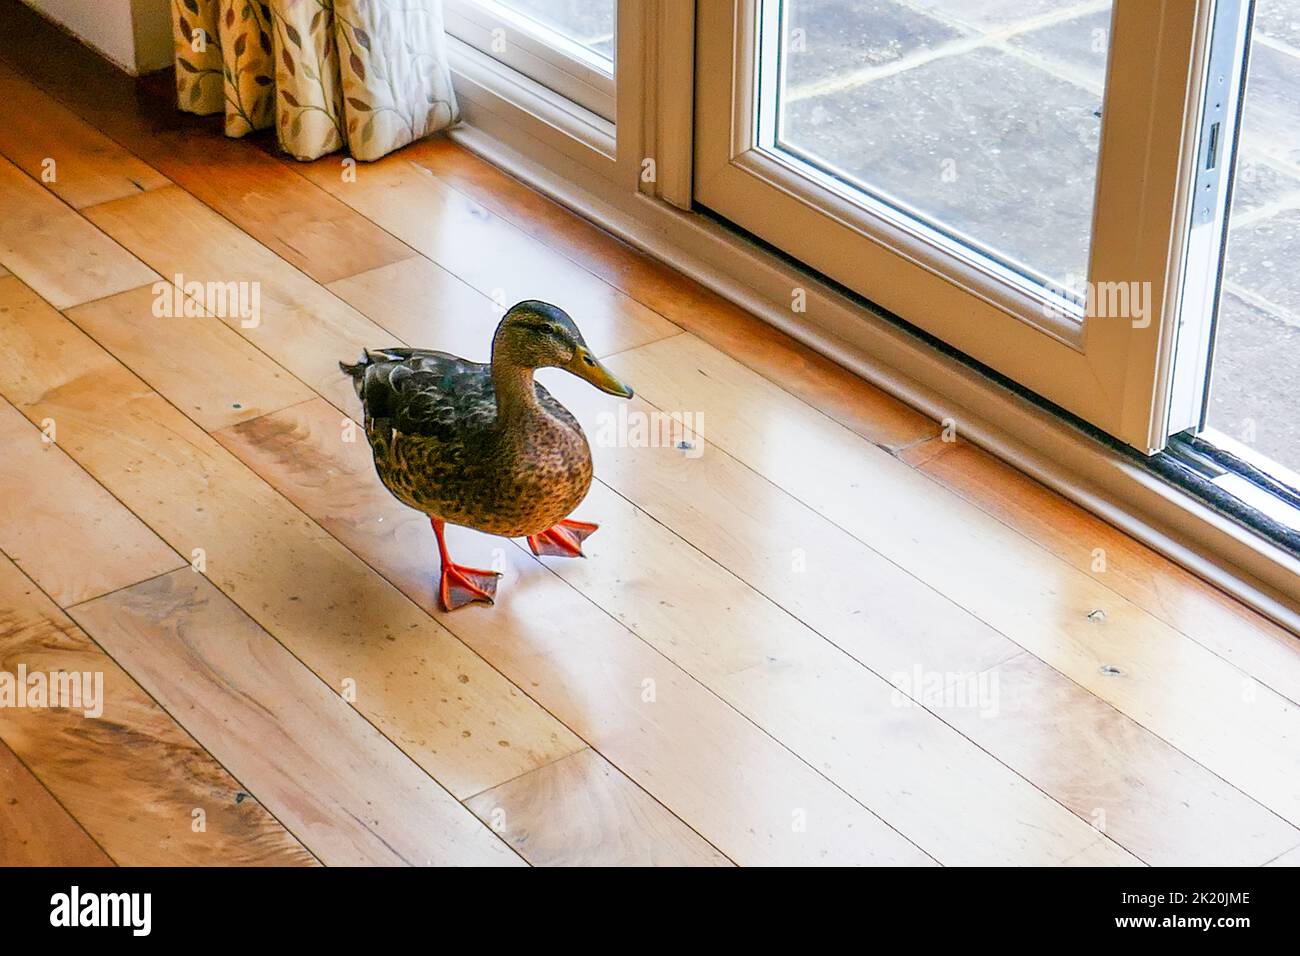 Eine Ente, die in einem Haus auf Parkettboden steht Stockfoto